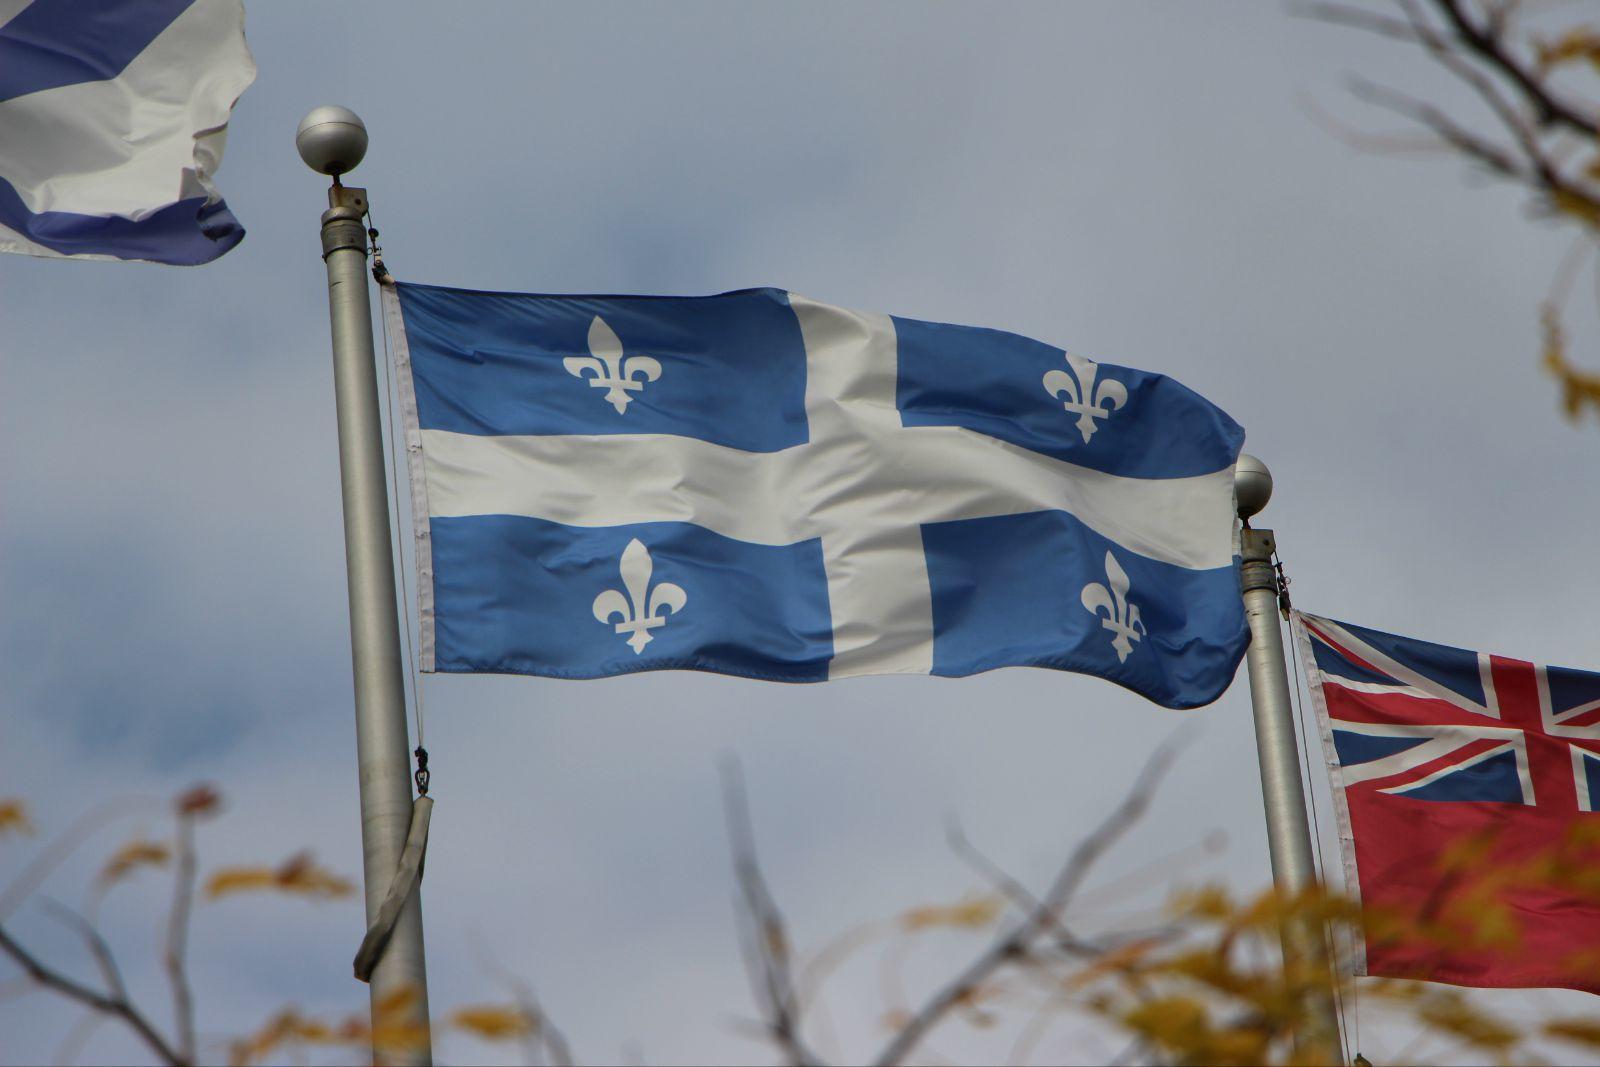 魁北克国旗图片